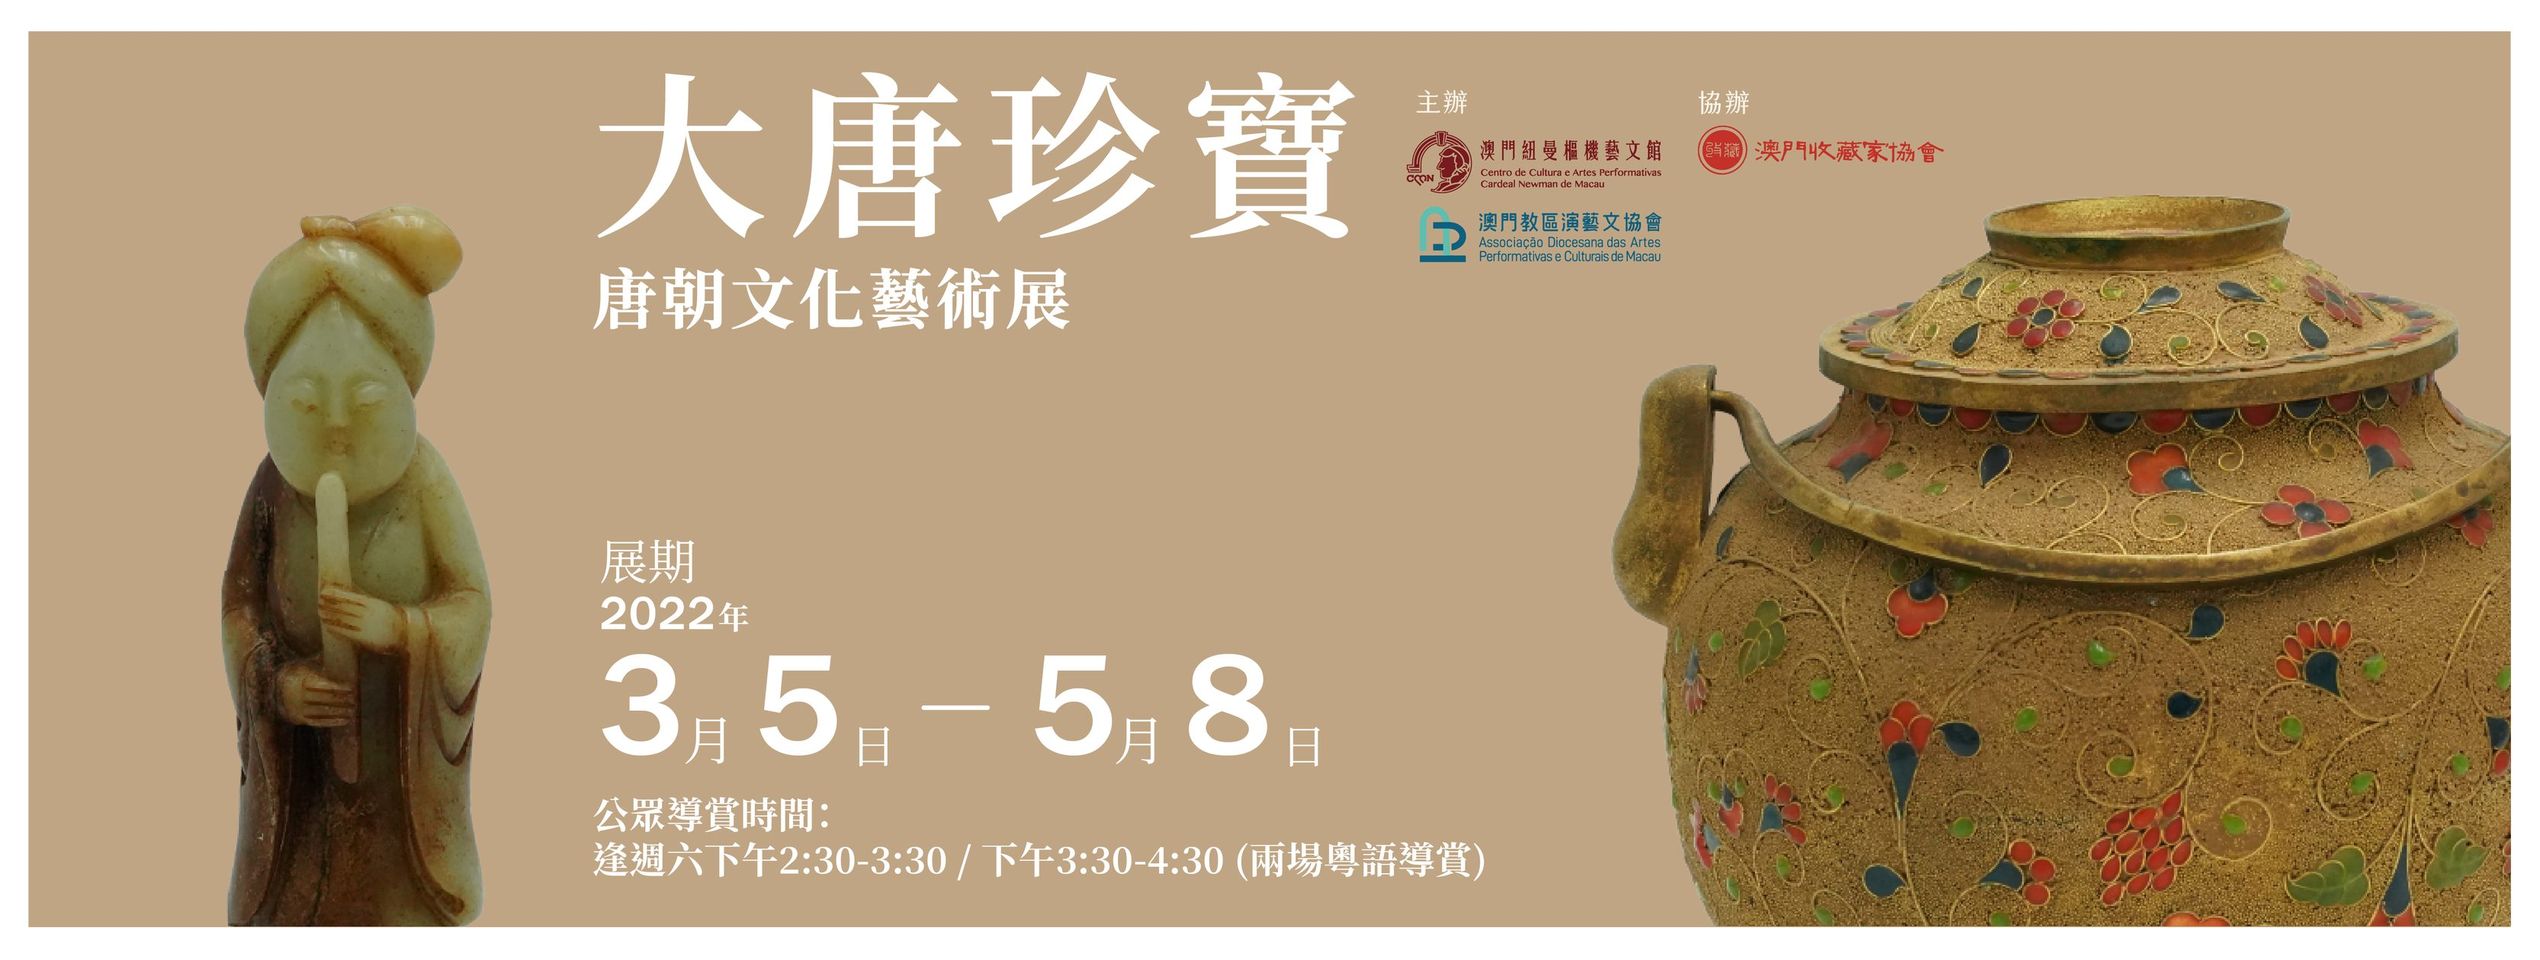 2022.02.28 唐朝文化藝術展